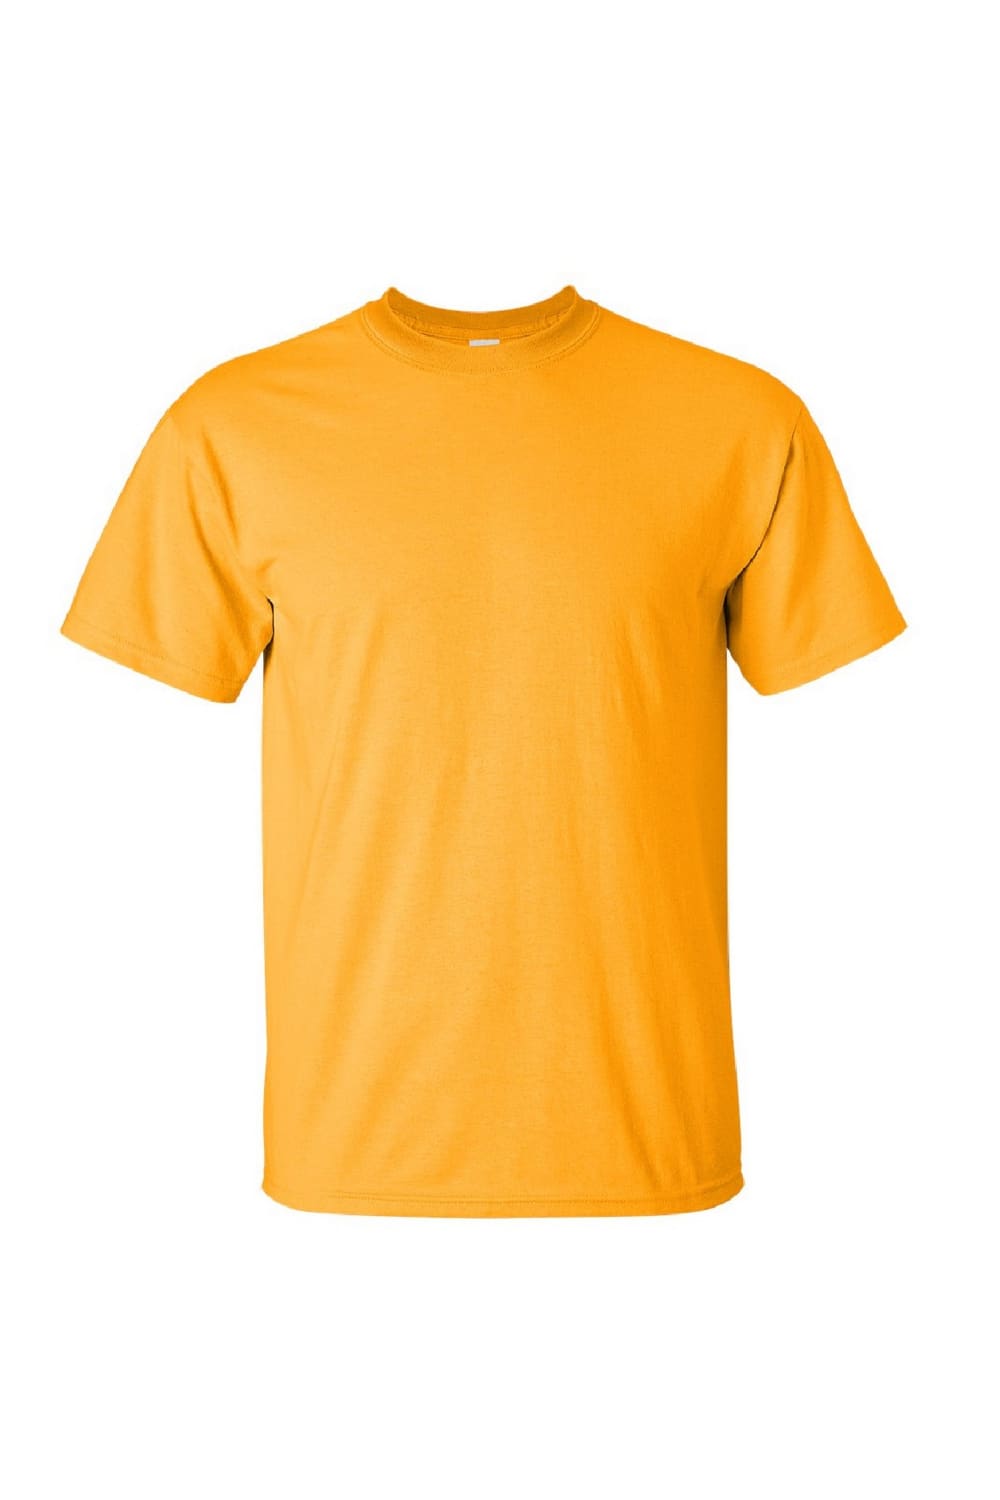 Gildan Mens Ultra Cotton Short Sleeve T-Shirt (Gold)